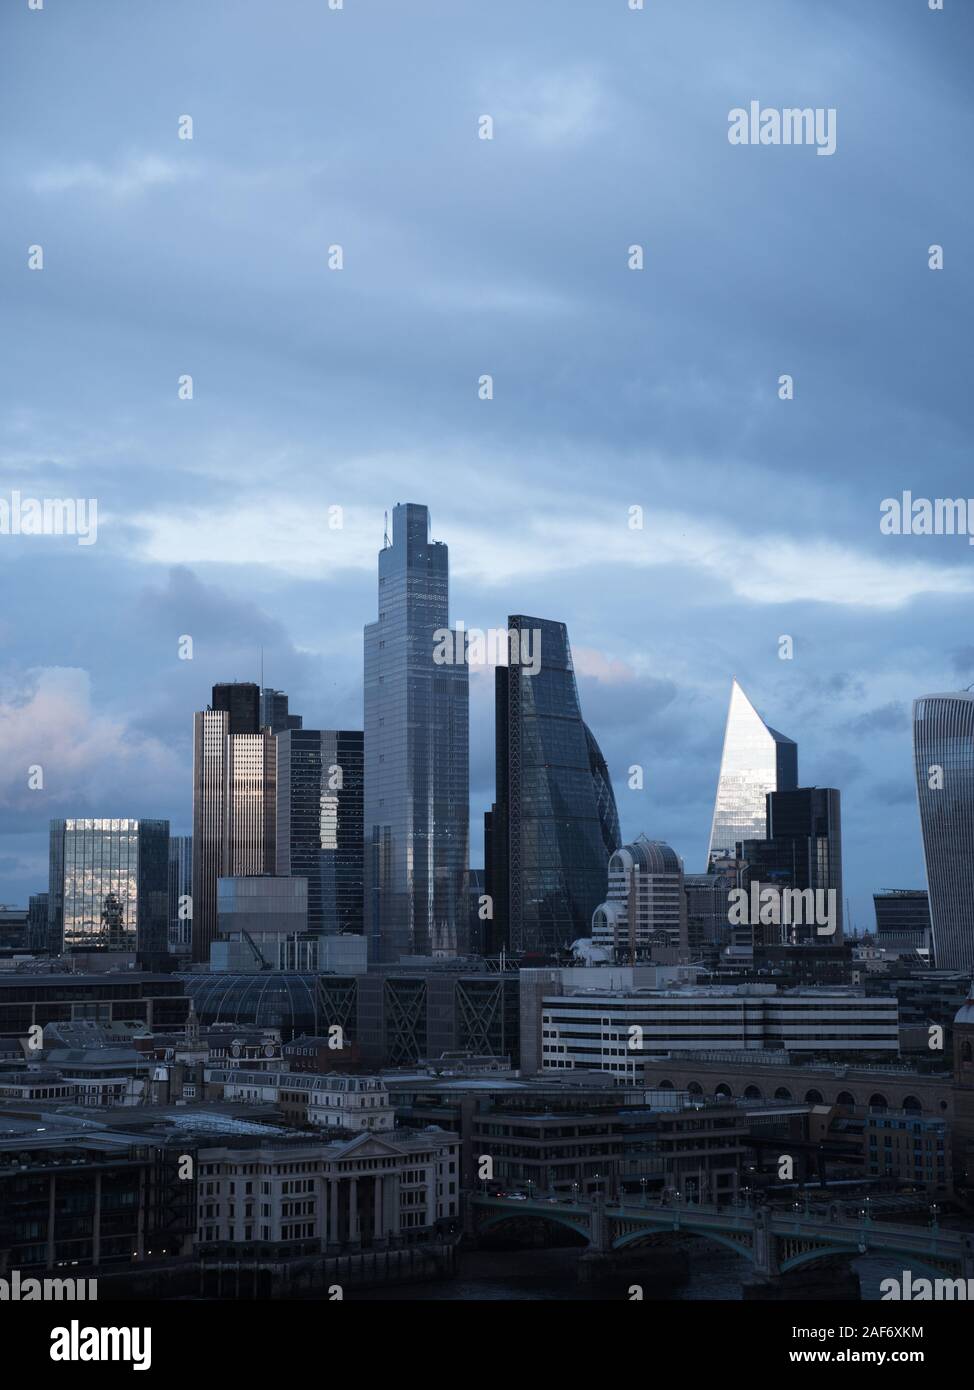 Ciudad de skyline londinense en inviernos fríos días, Londres, Inglaterra, Reino Unido, GB. Foto de stock